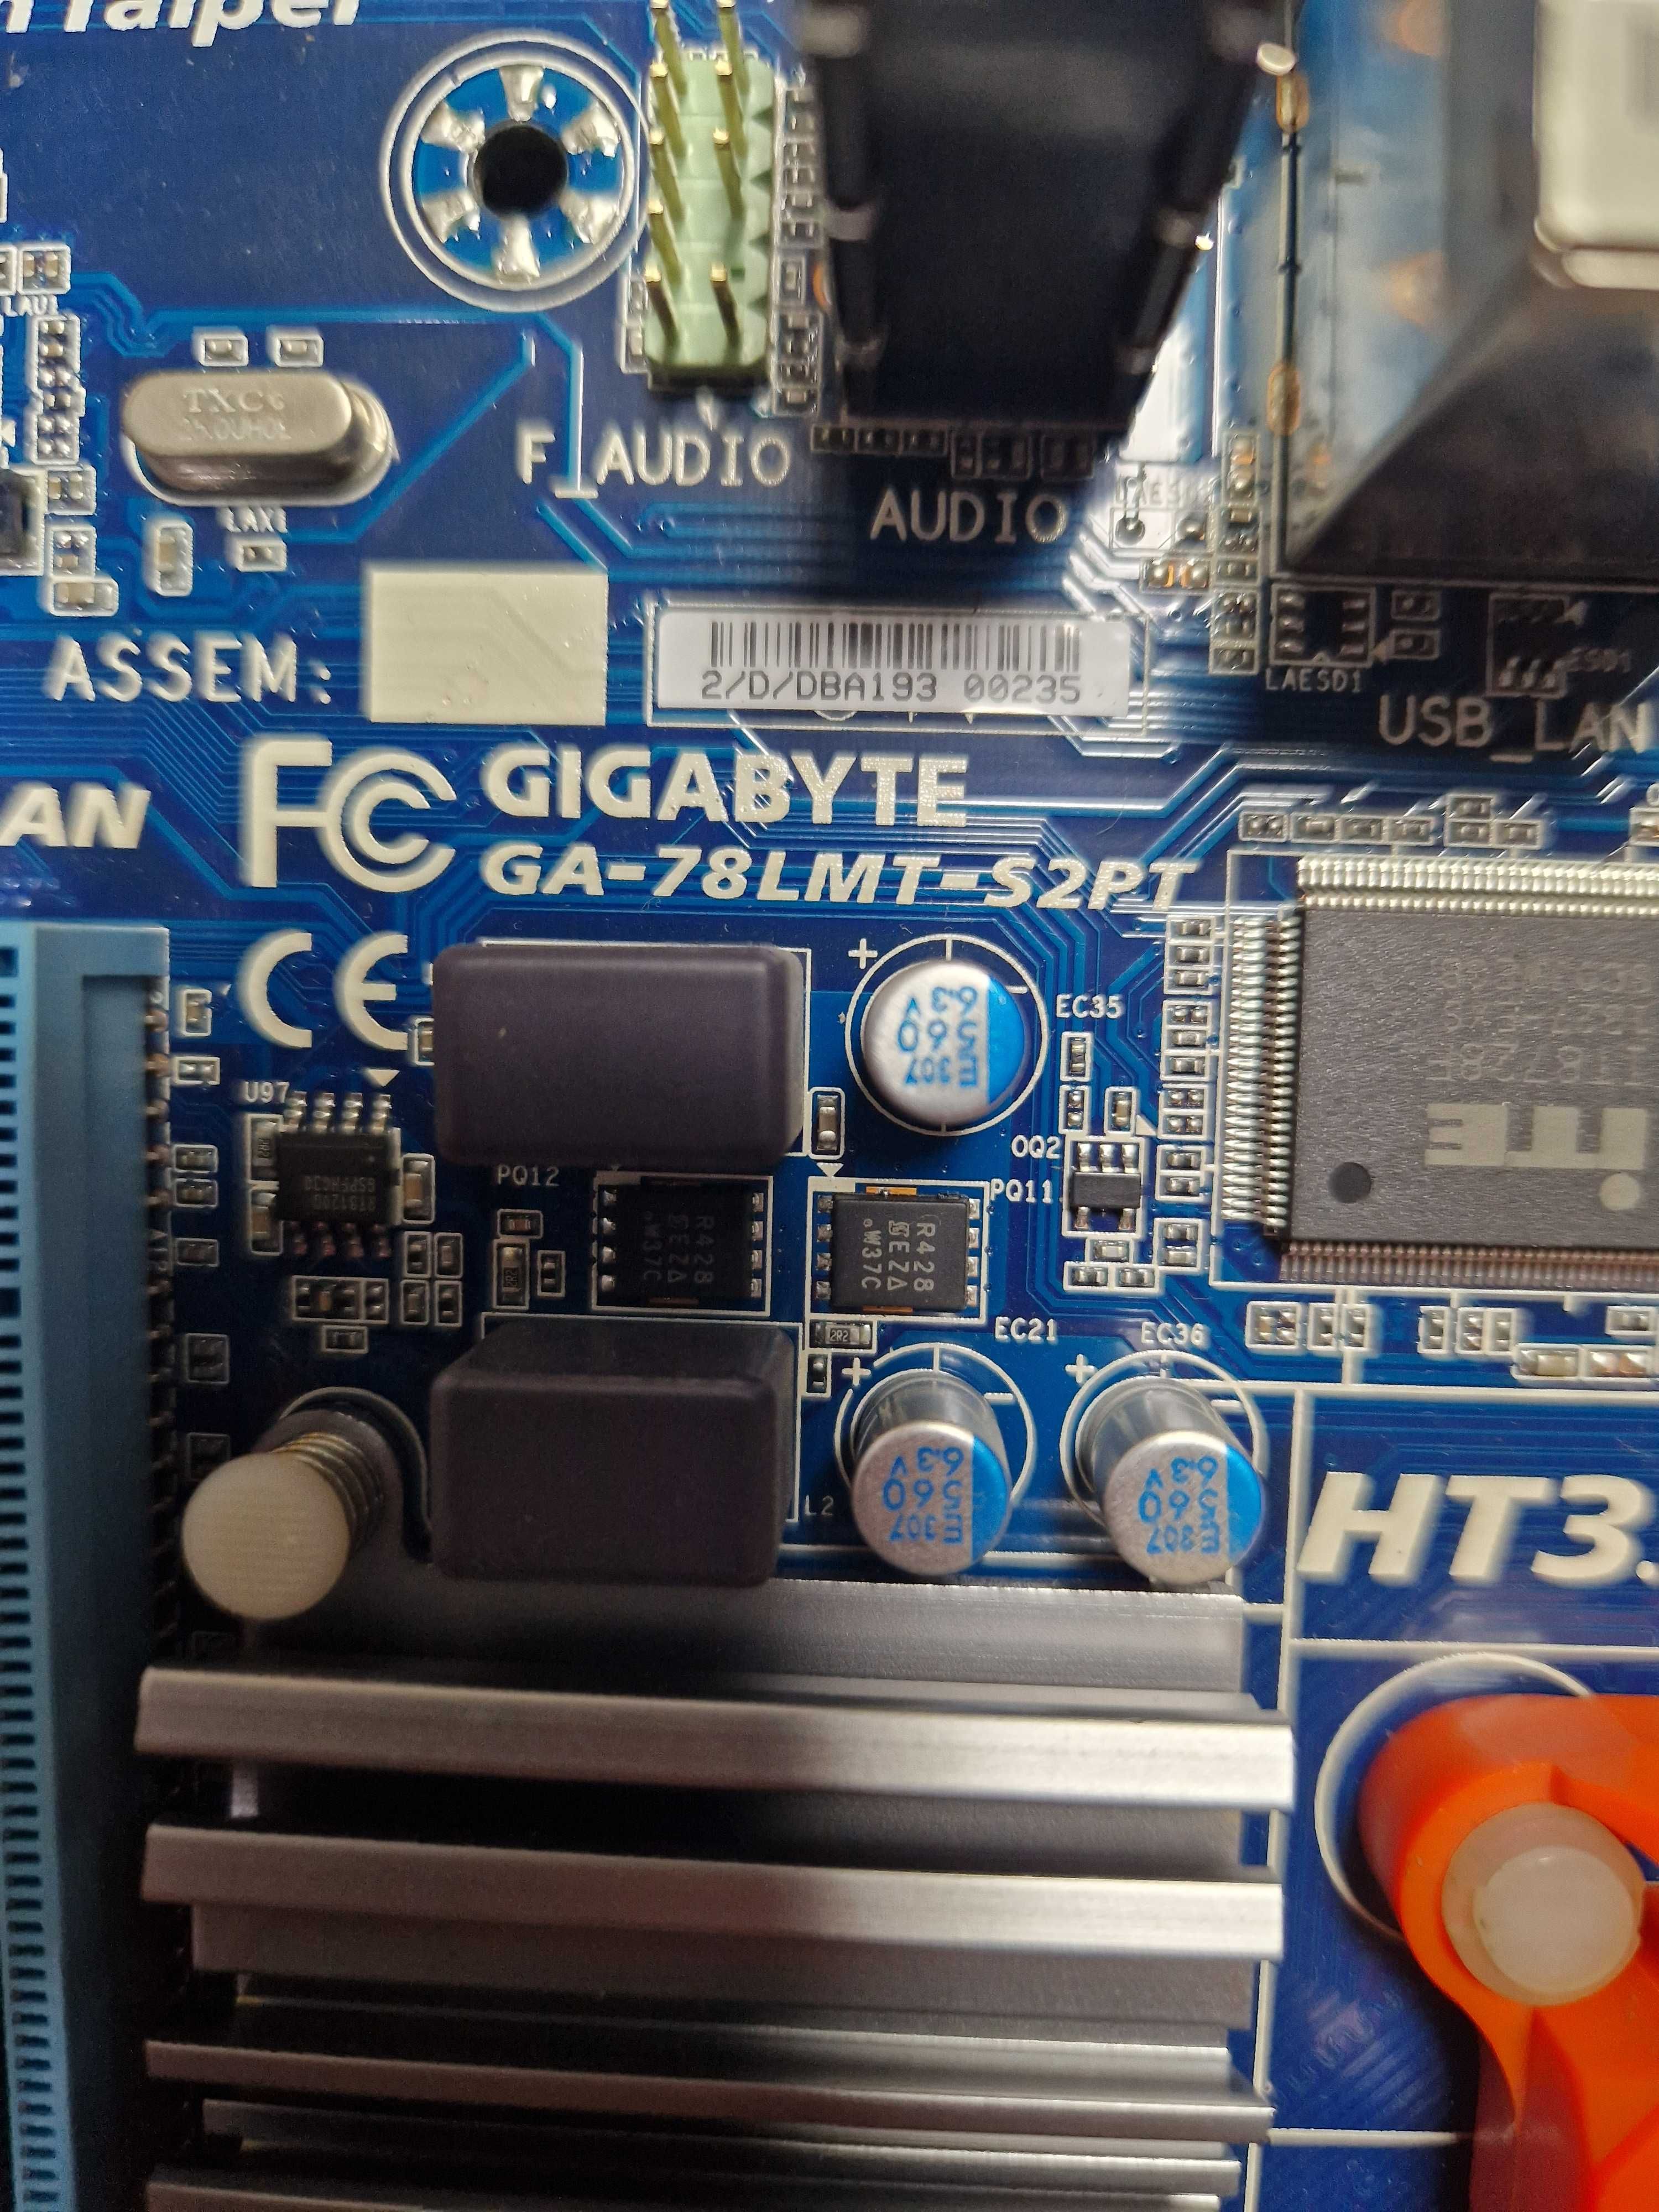 Procesor AMD FX8320 3.5 GHz AM3+ placa gigabyte ga-78lmt-s2pt 8gb ddr3